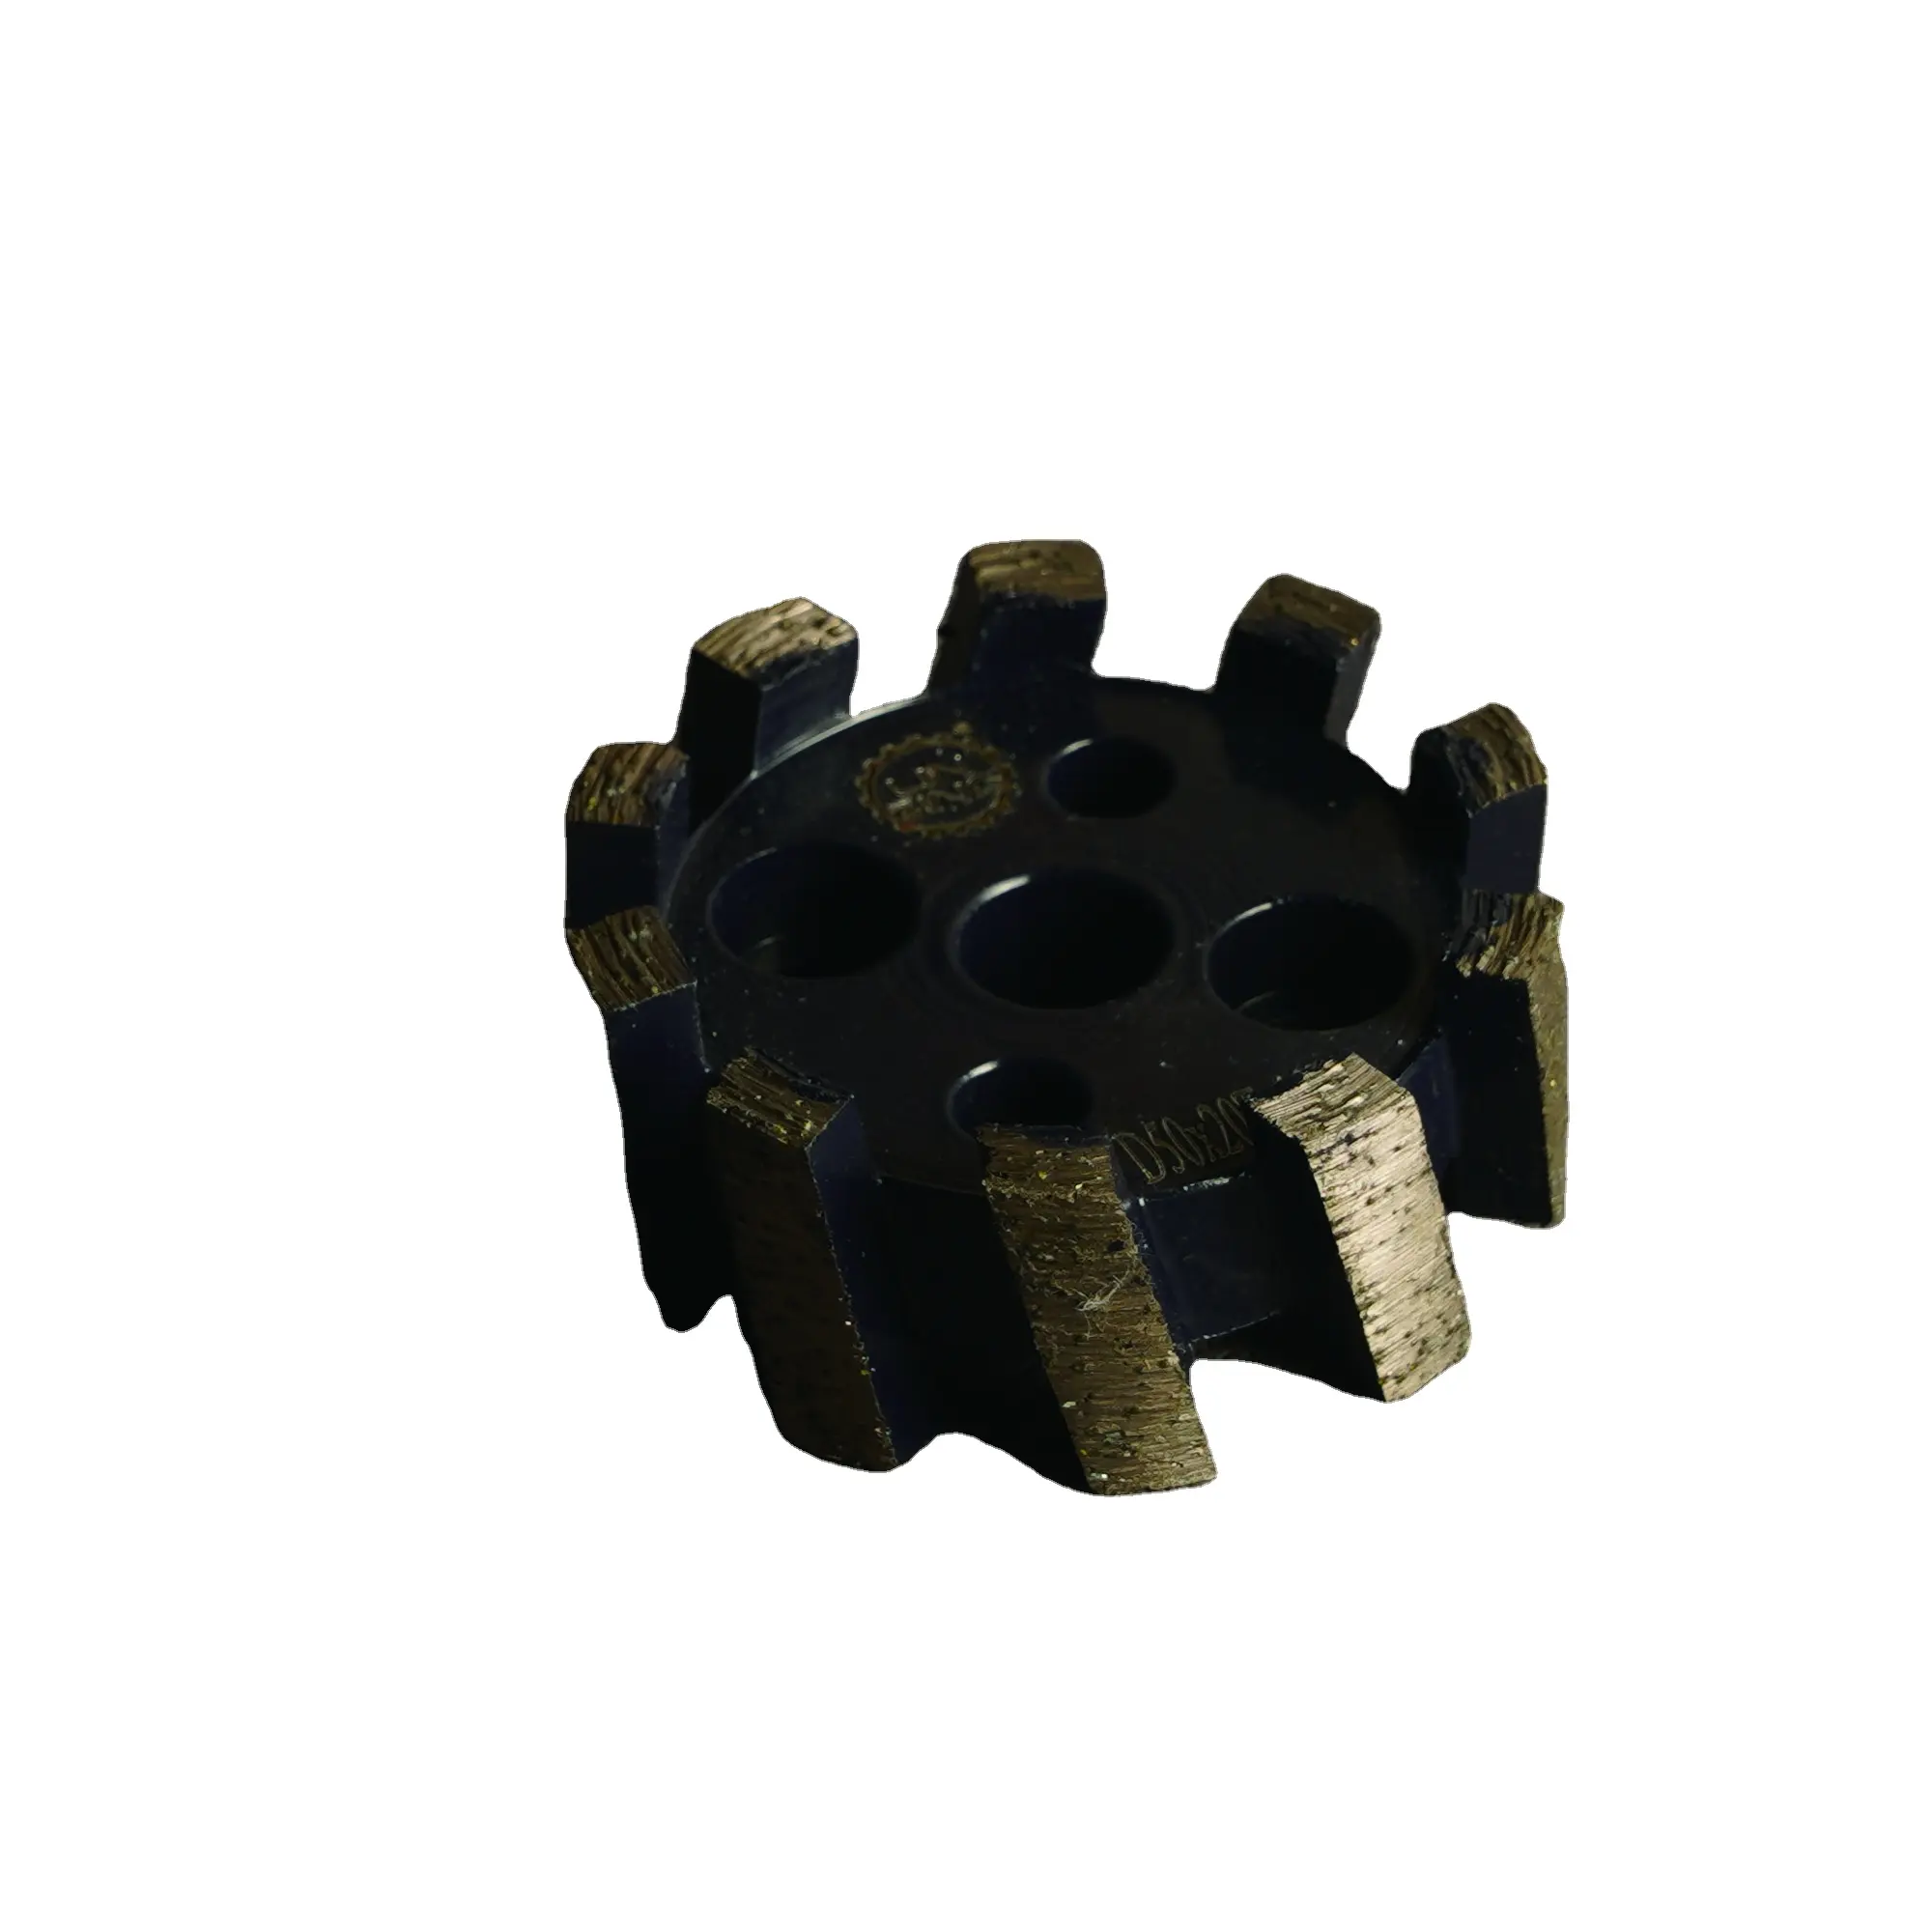 연삭 및 밀링 Cnc 가장자리 프로파일 링 도구 습식 사용을위한 스텁빙 그라인딩 휠 화강암 도자기 타일 다이아몬드 그라인딩 휠